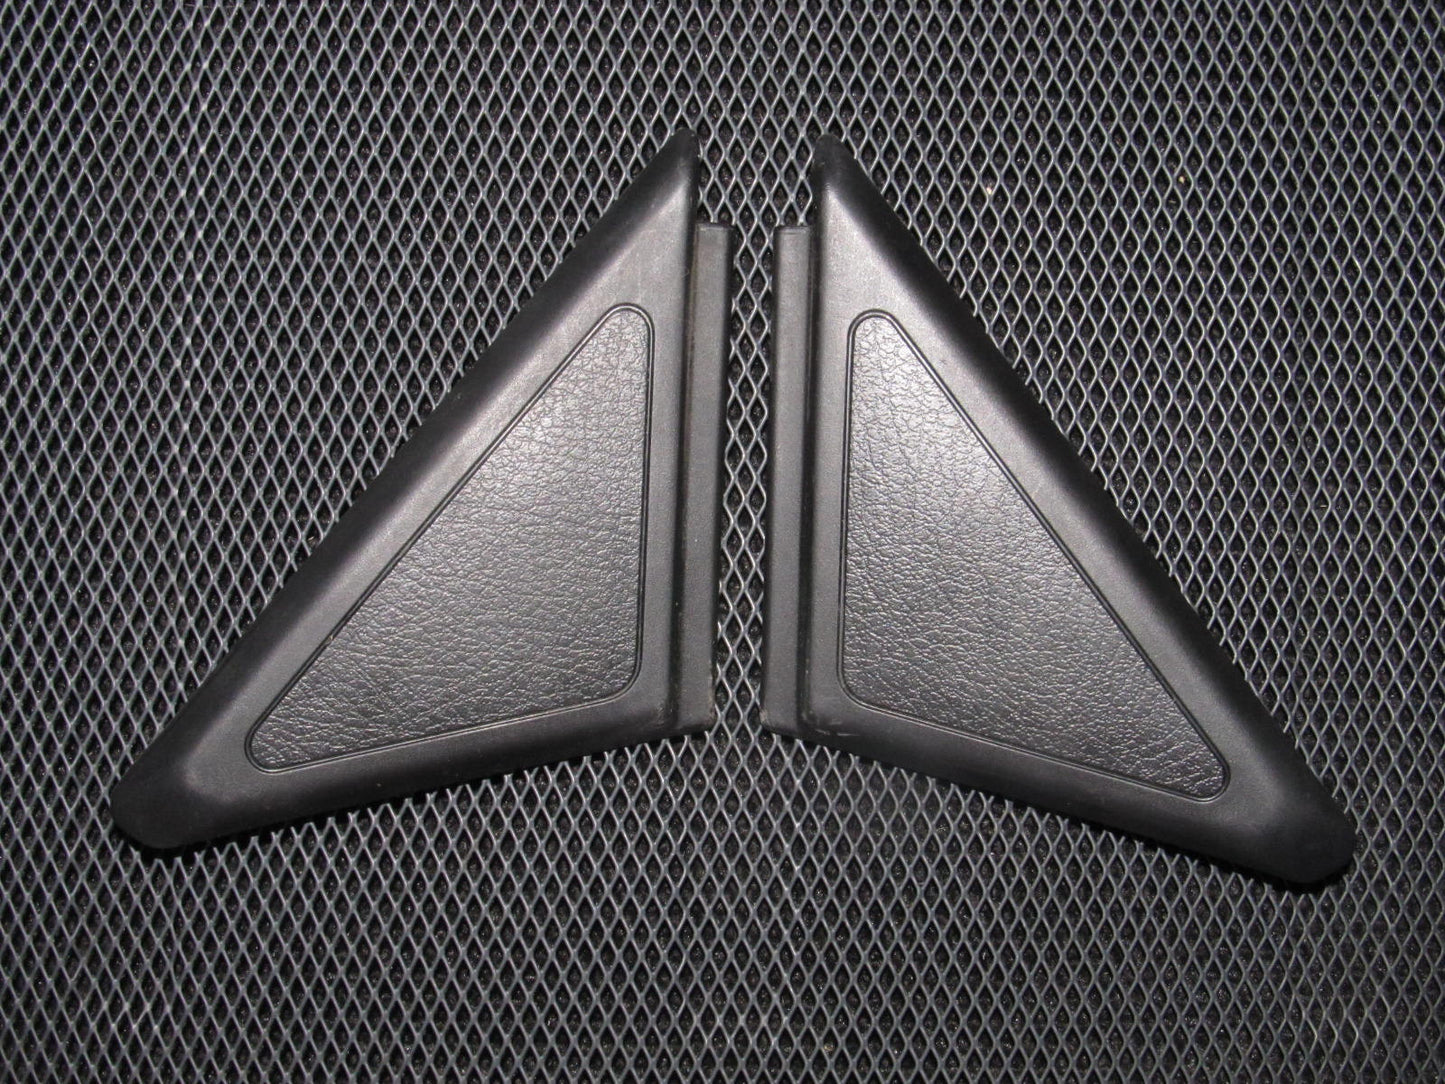 90-93 Acura Integra OEM Black Door Panel Mirror Cover Trim - 2 pieces